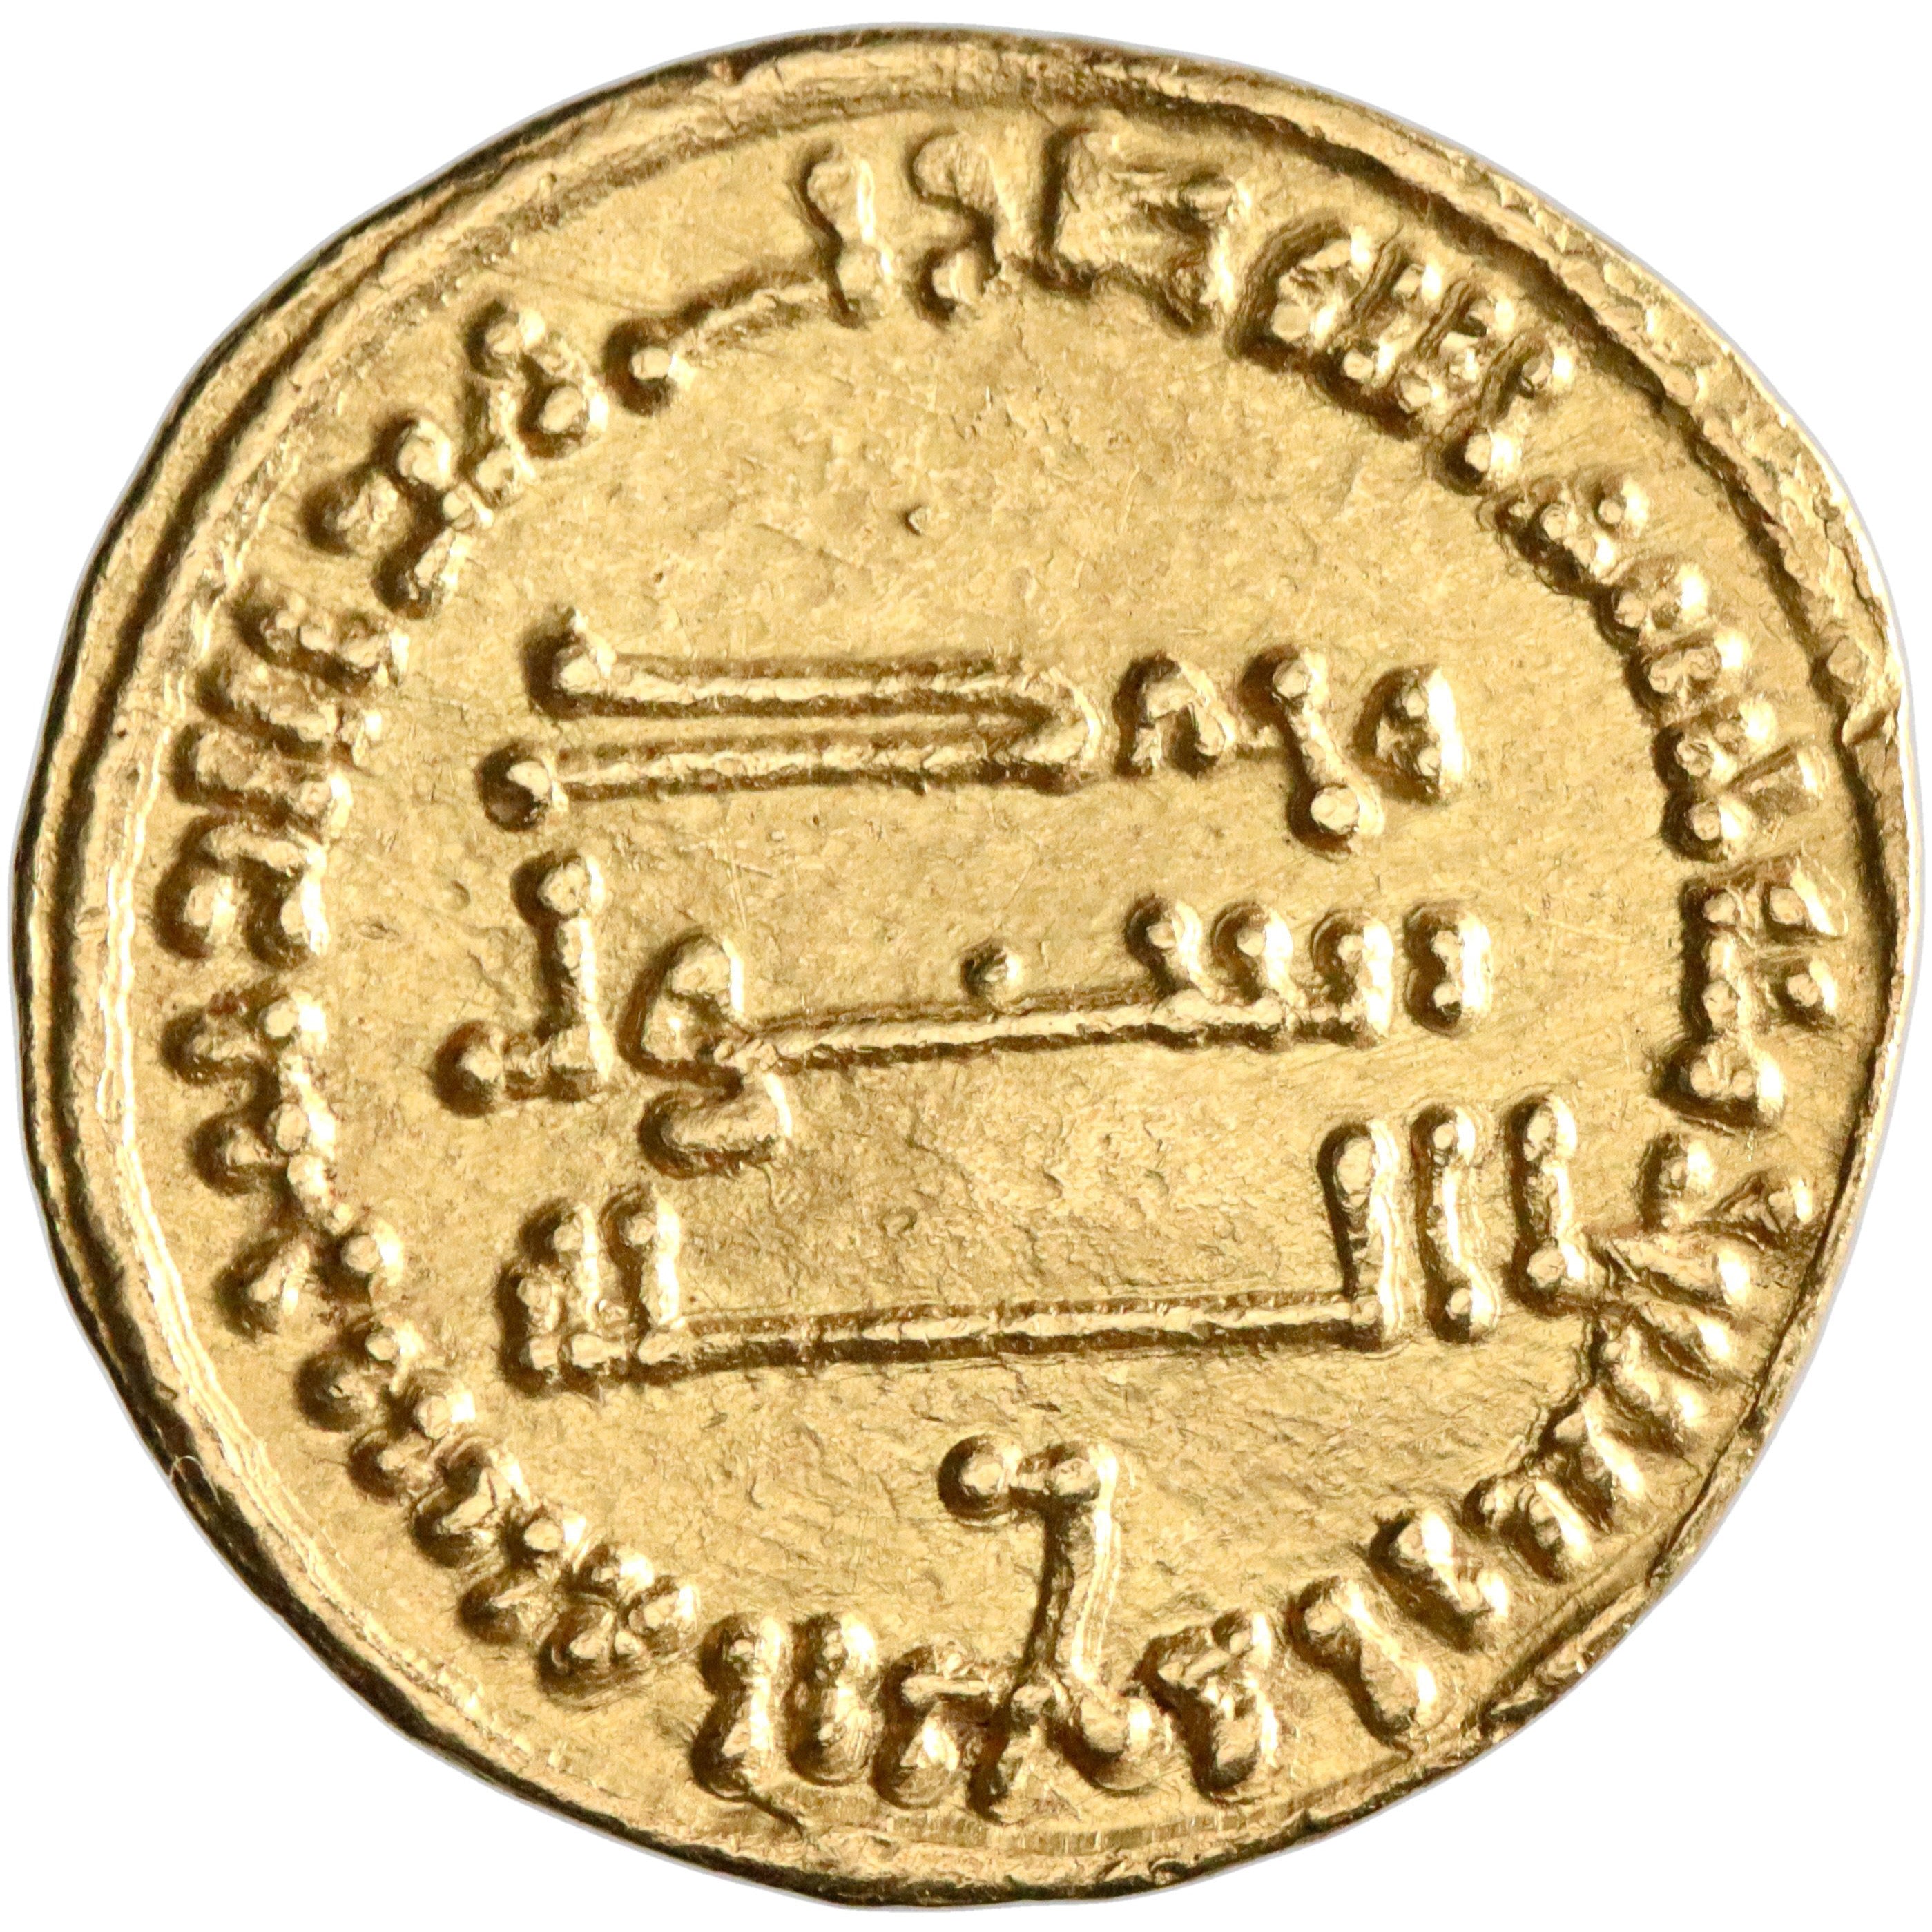 Abbasid, al-Mansur, gold dinar, AH 144